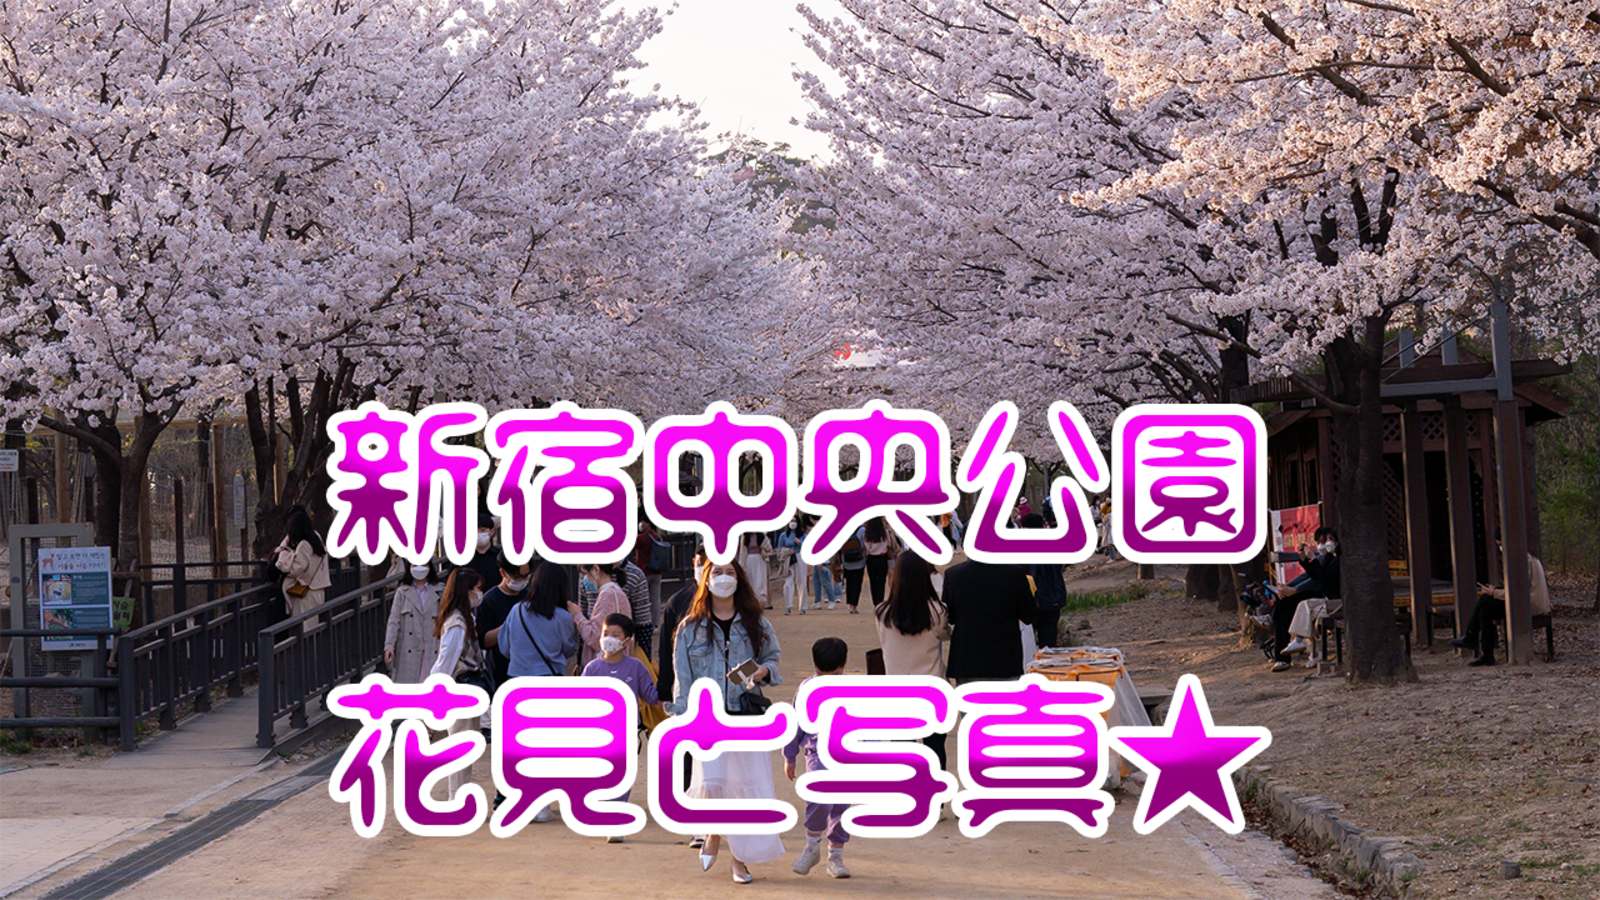 4/1 15:30新宿中央公園で花見しながら写真撮ろう。トークルームでも募集中。